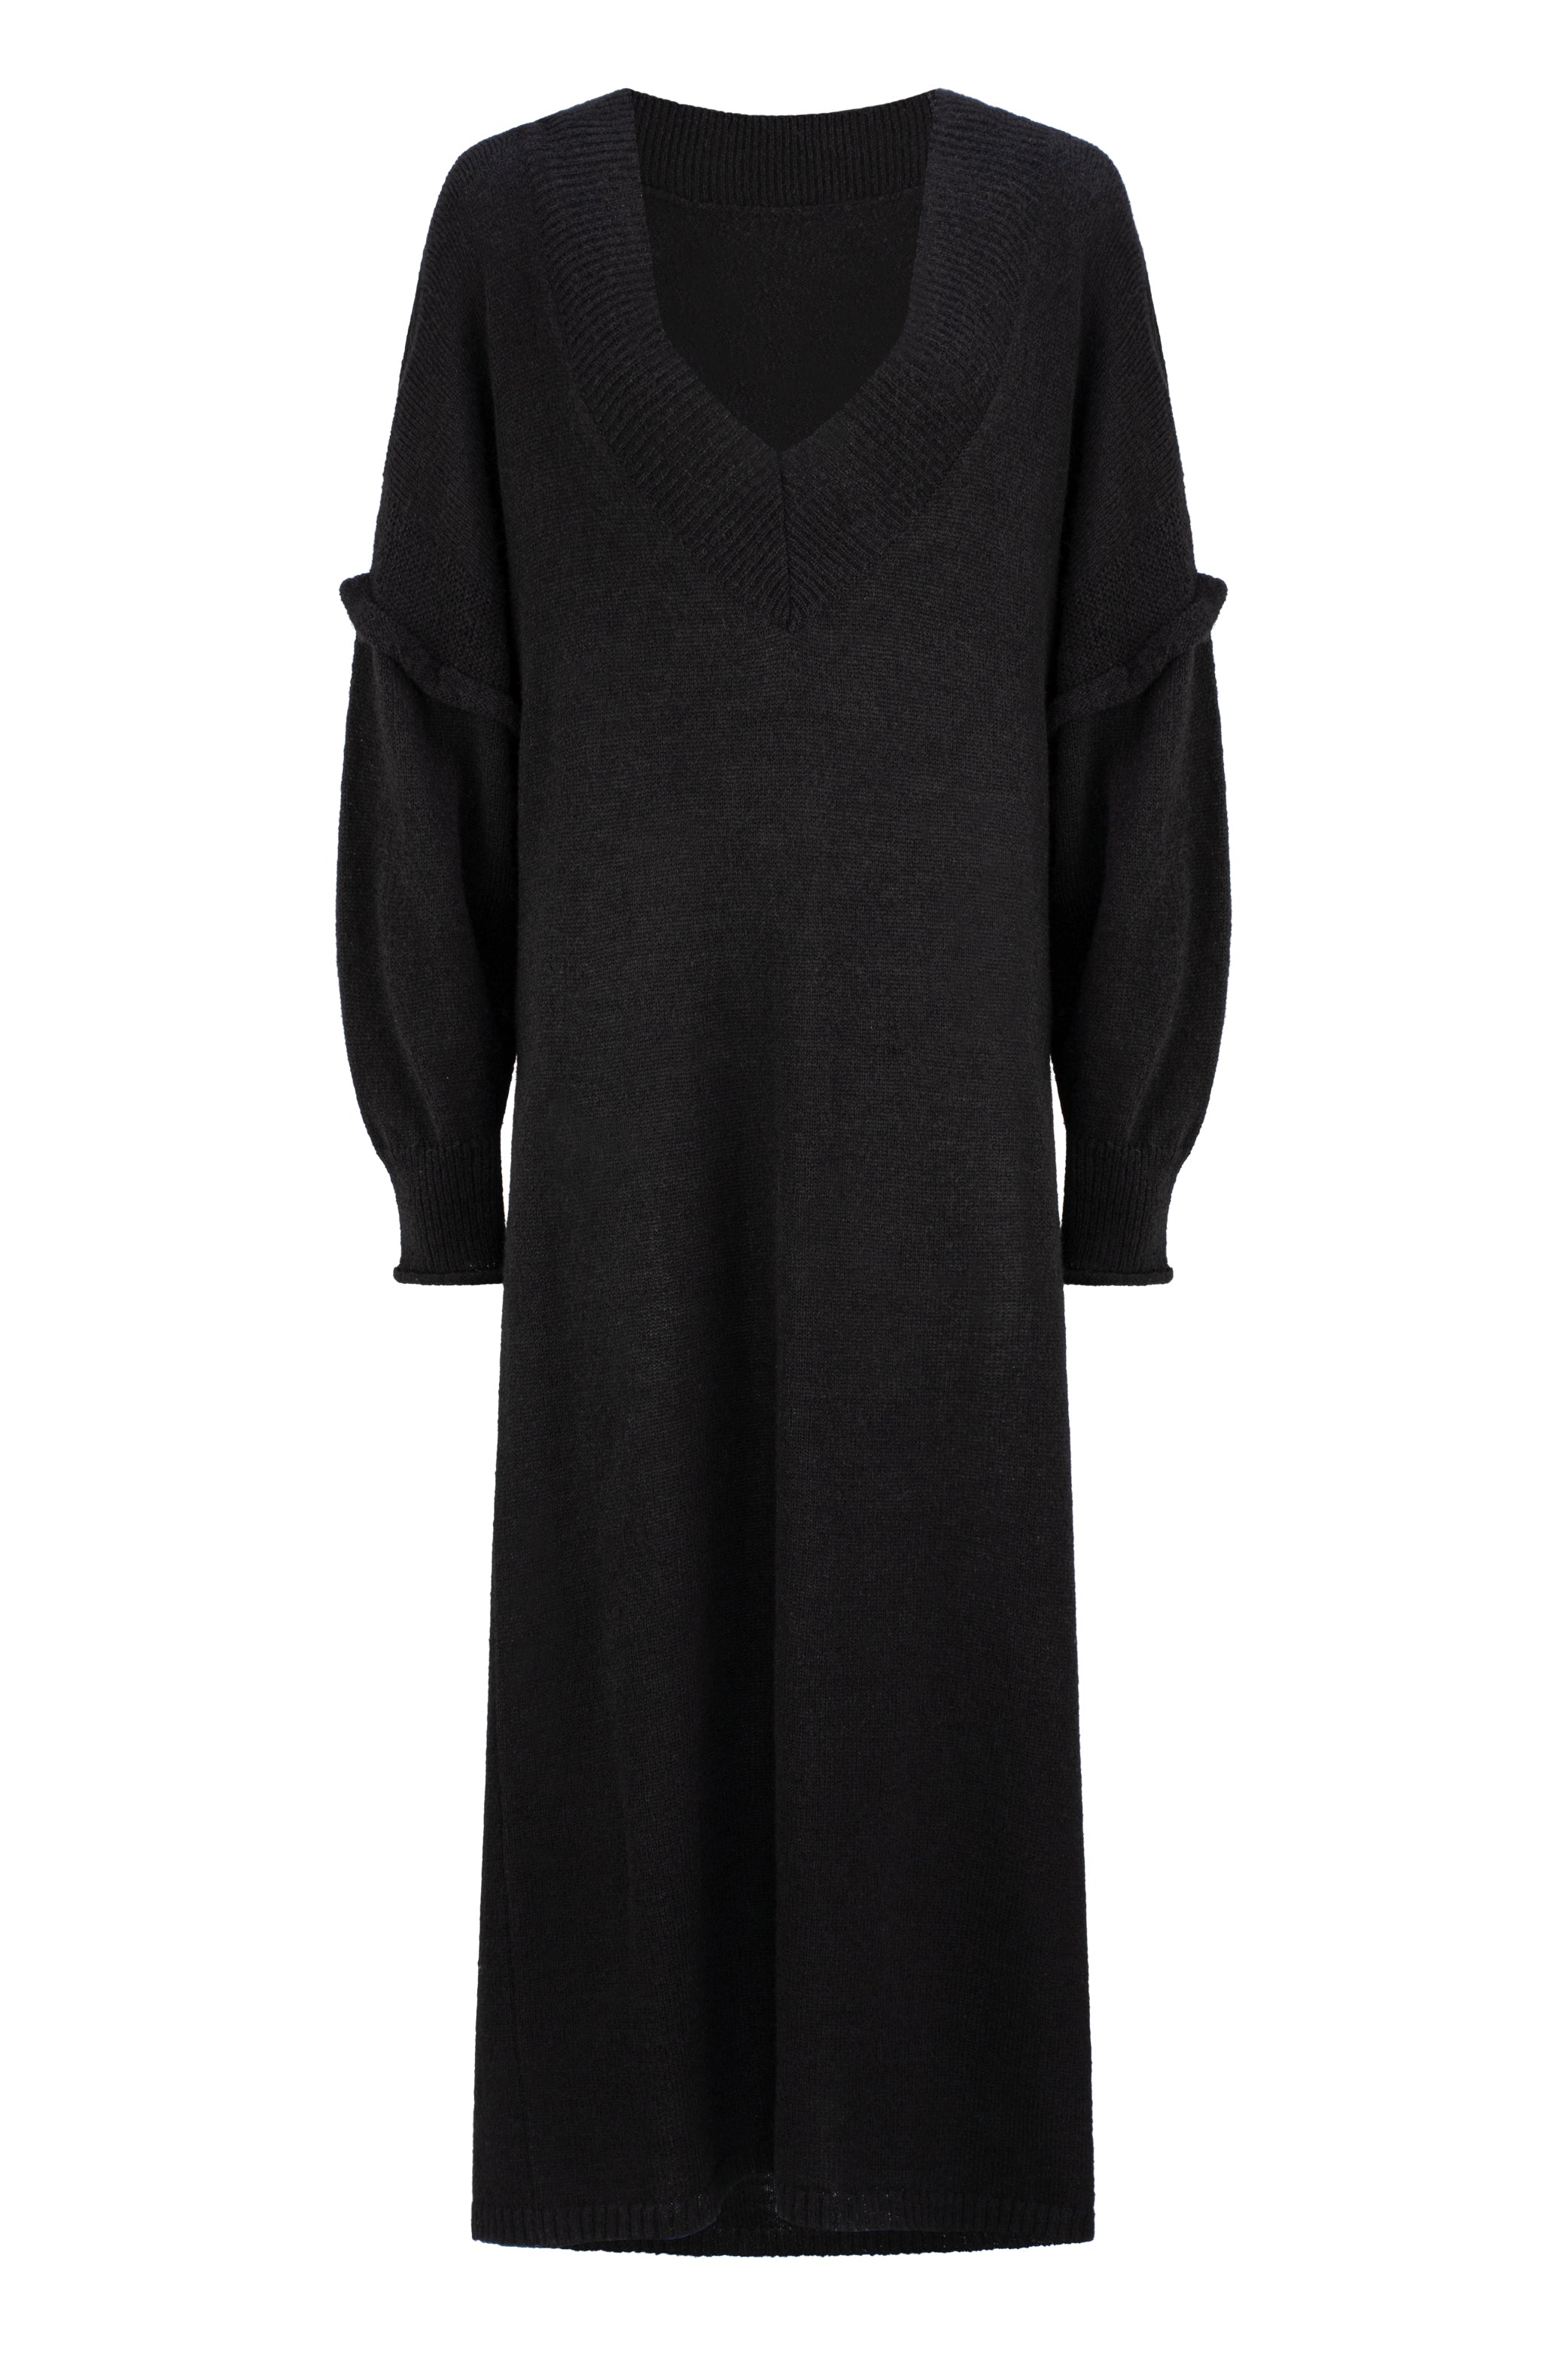 Dref By D Women's Carmel Dress - Black